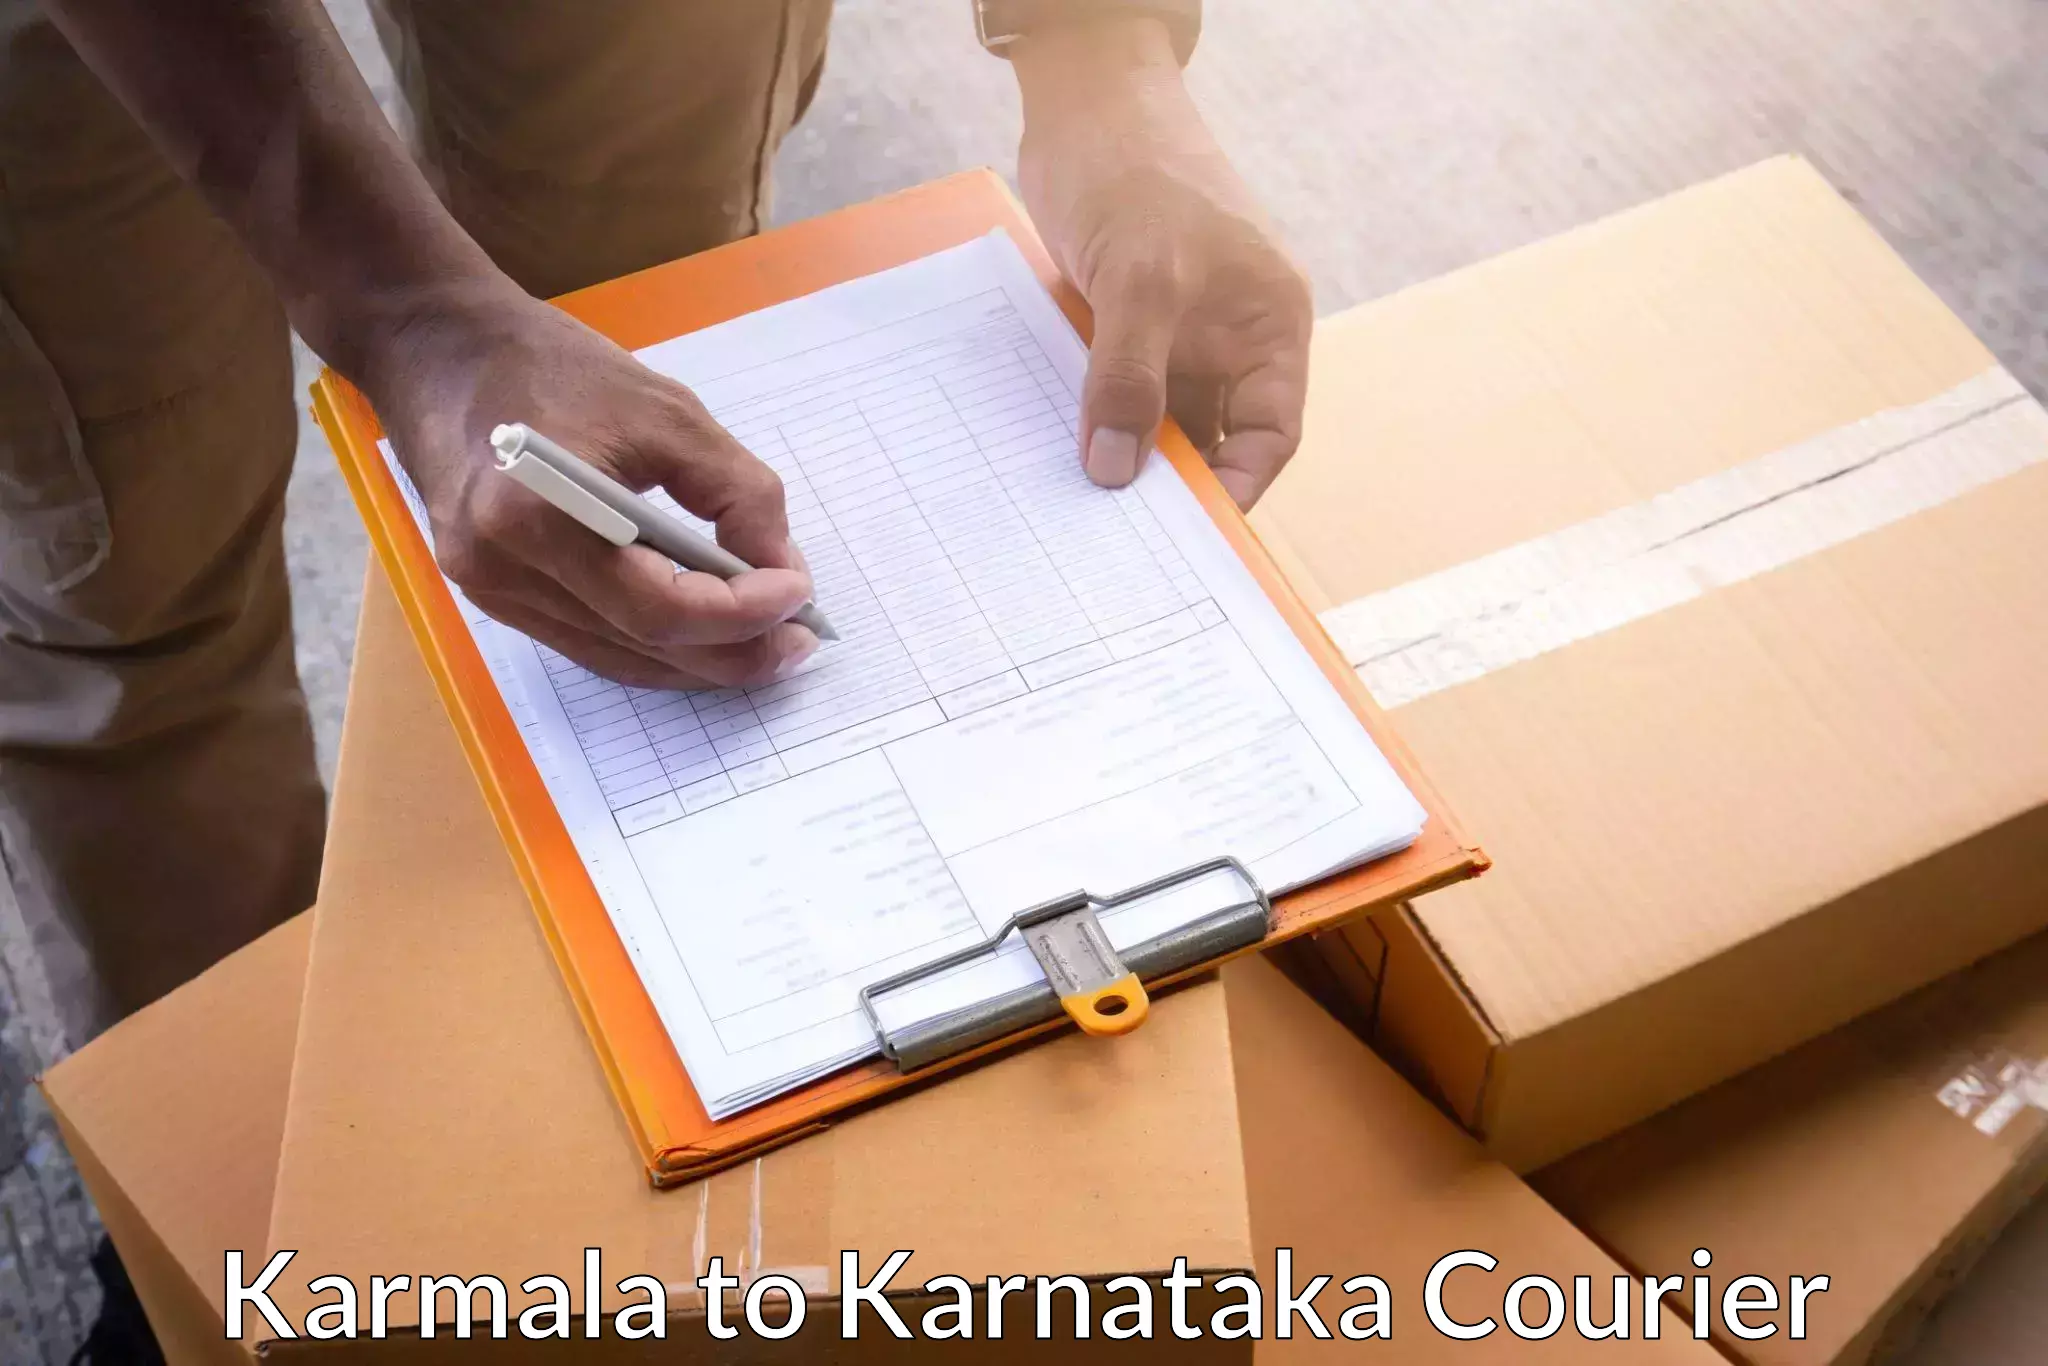 Seamless shipping service Karmala to Sagara